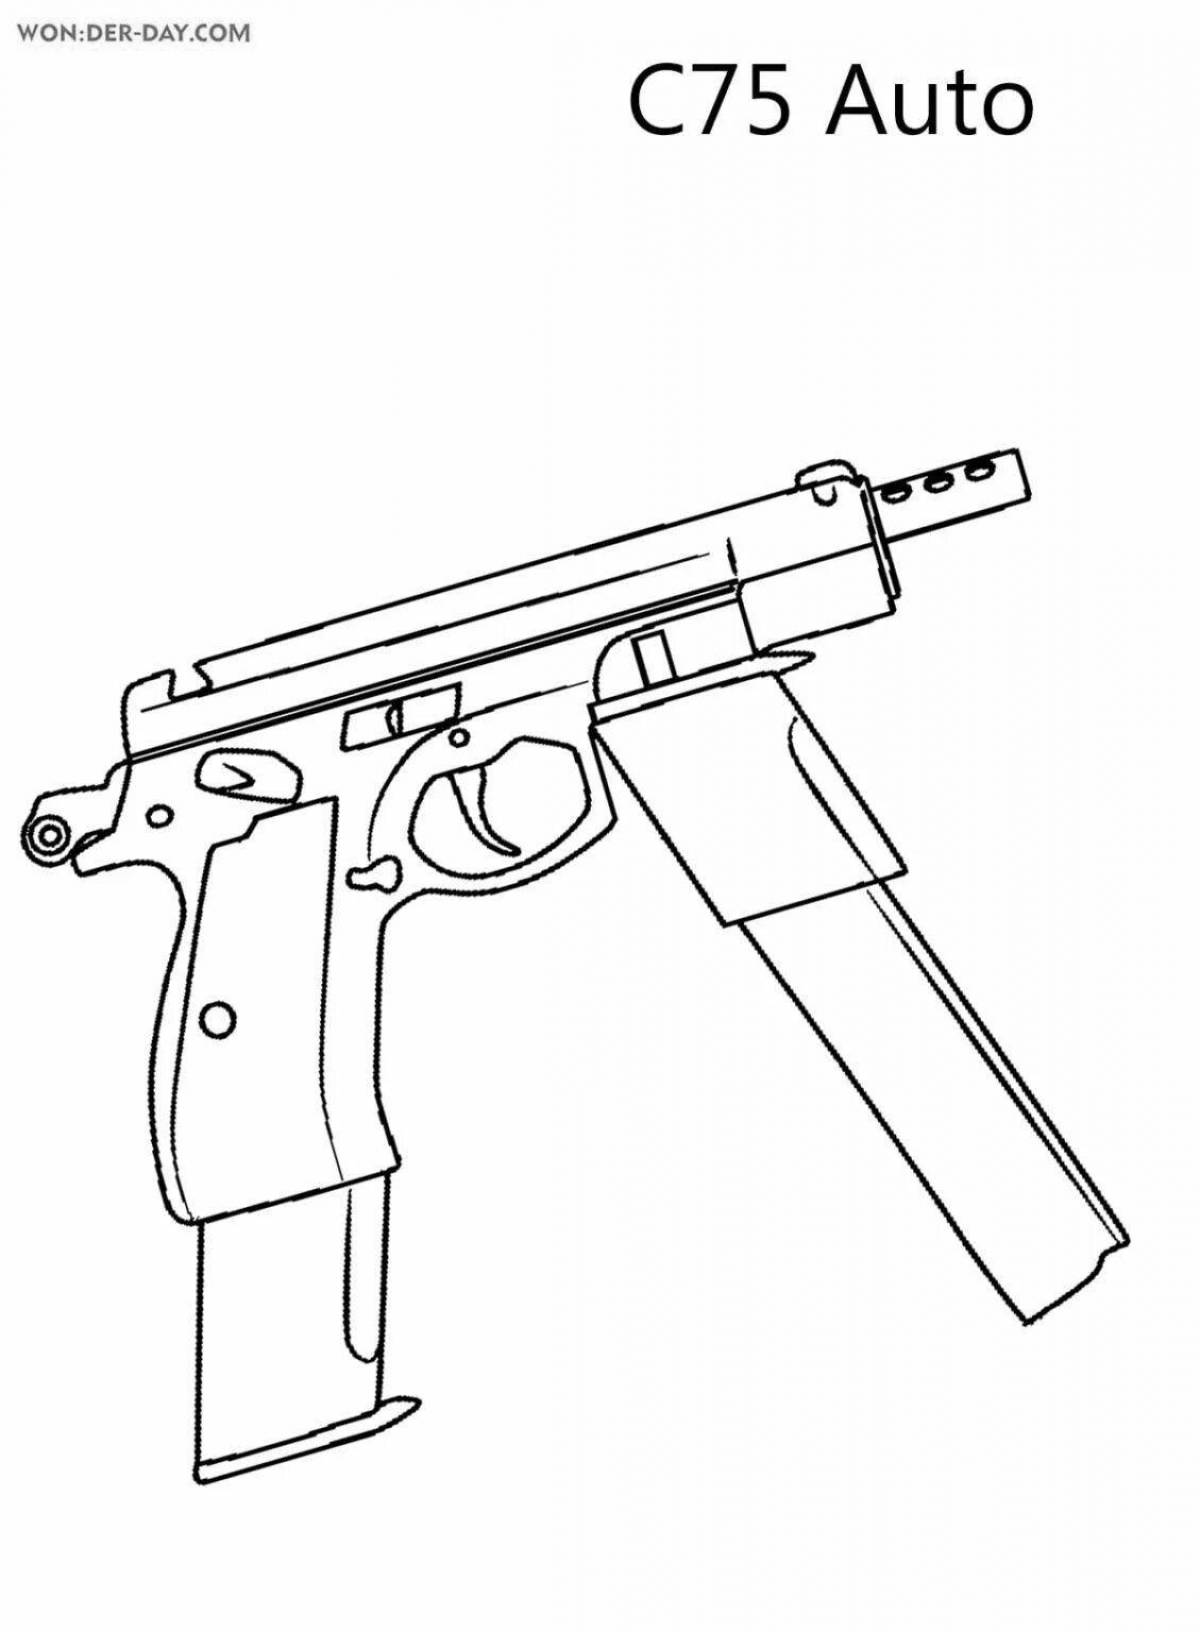 Замысловато раскрашивающий пистолет из standoff 2